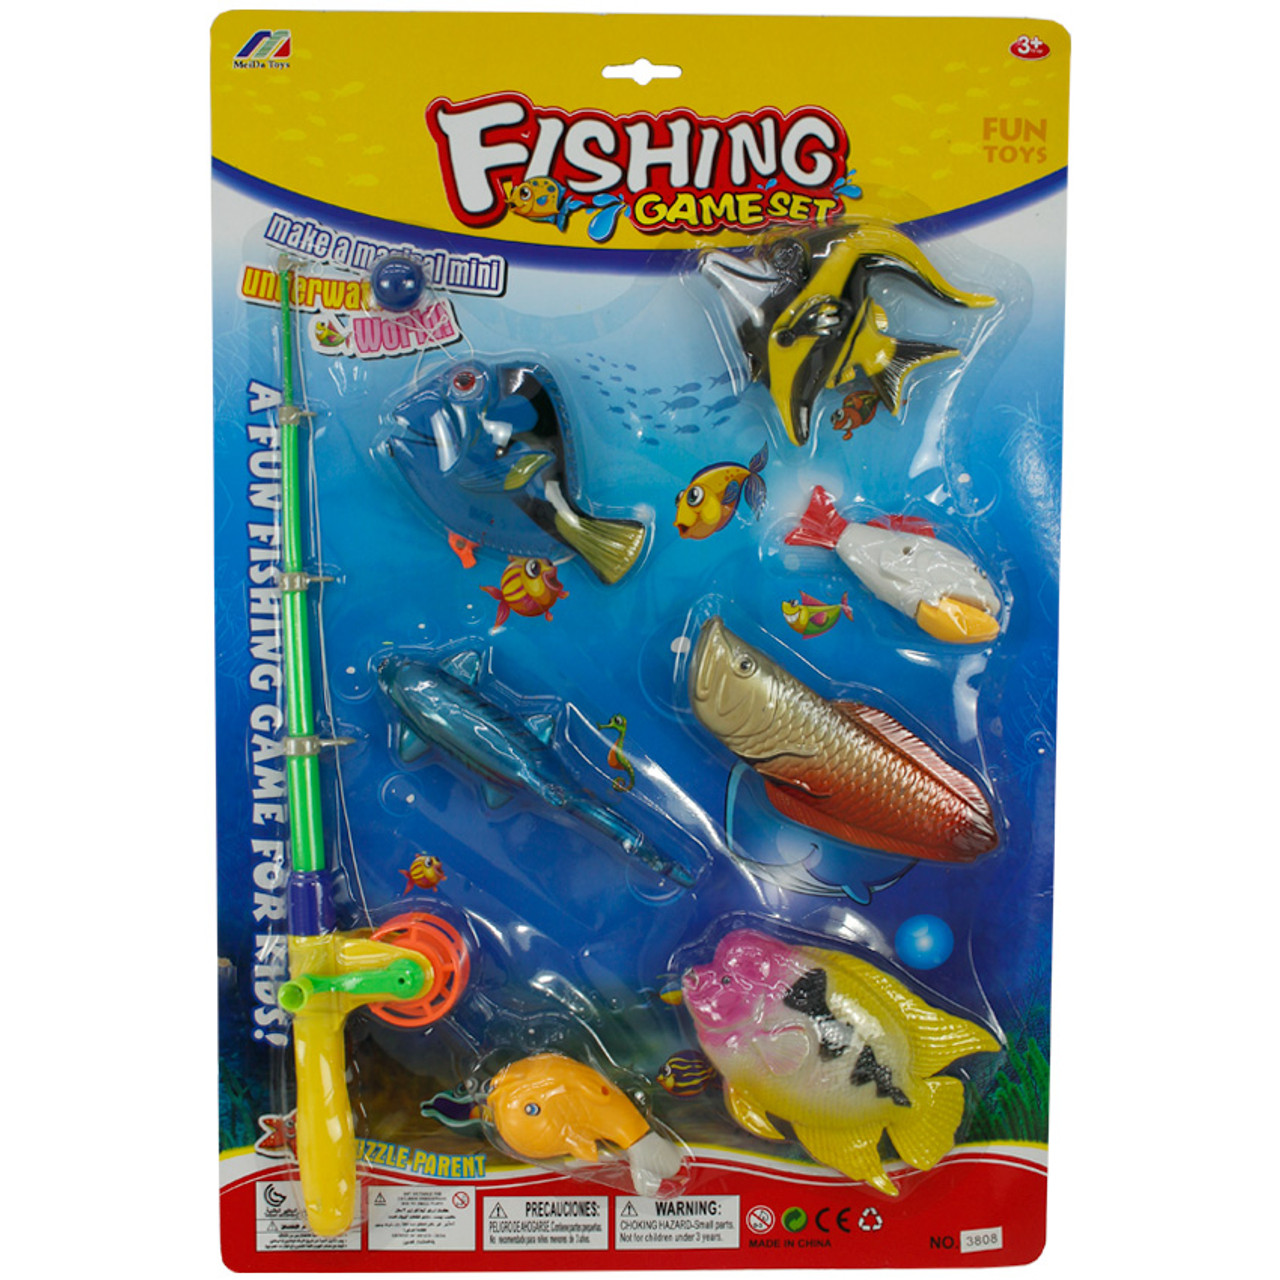 Fishing Game Set